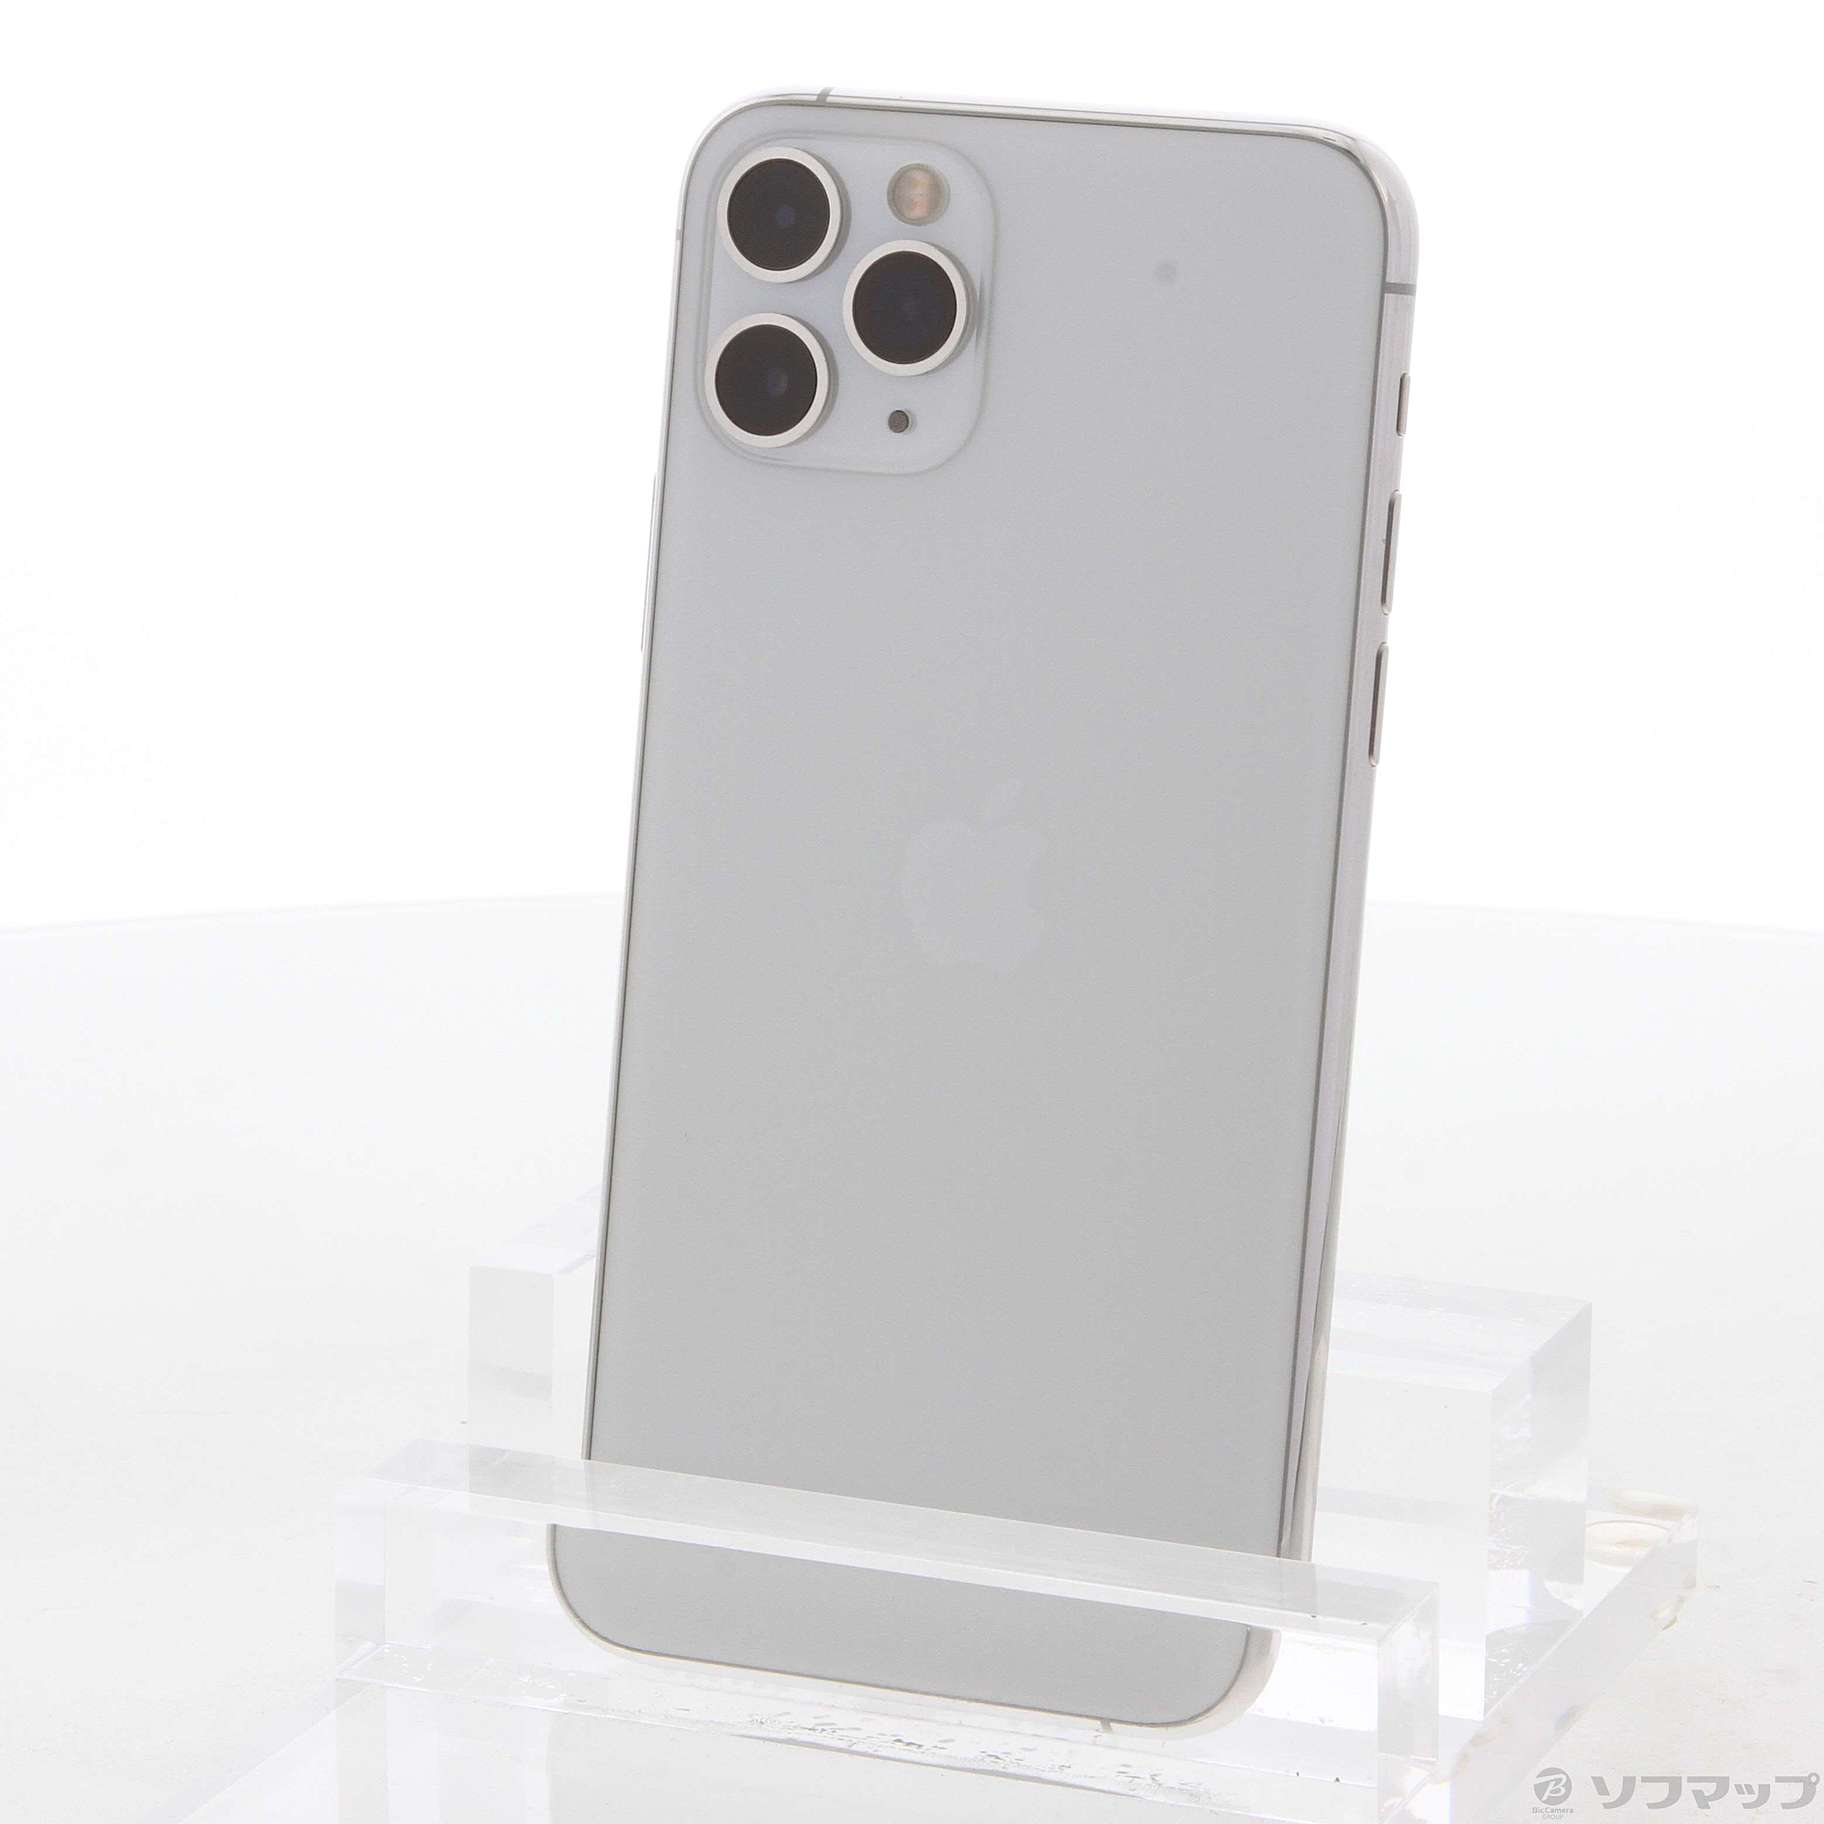 正規販売店] Apple iPhone 11 Pro 512GB SIMフリー シルバー econet.bi